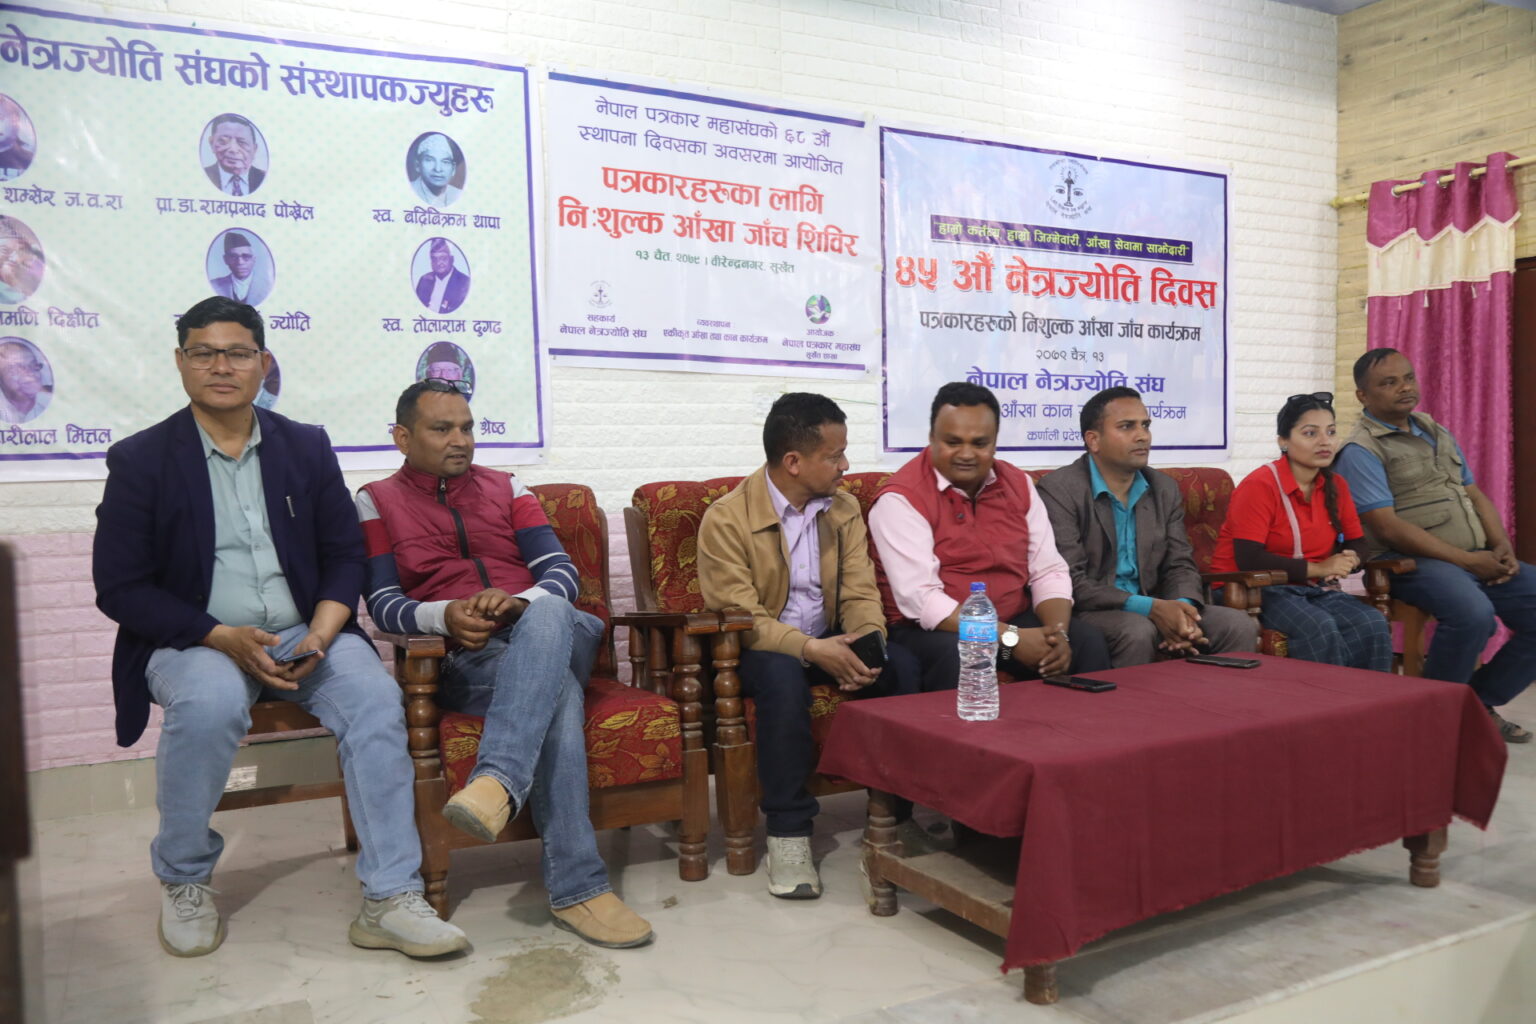 नेपाल नेत्रज्योति संघको ४५ औँ स्थापना  दिवसको अवसरमा पत्रकारहरुको निःशुल्क आँखा जाँच